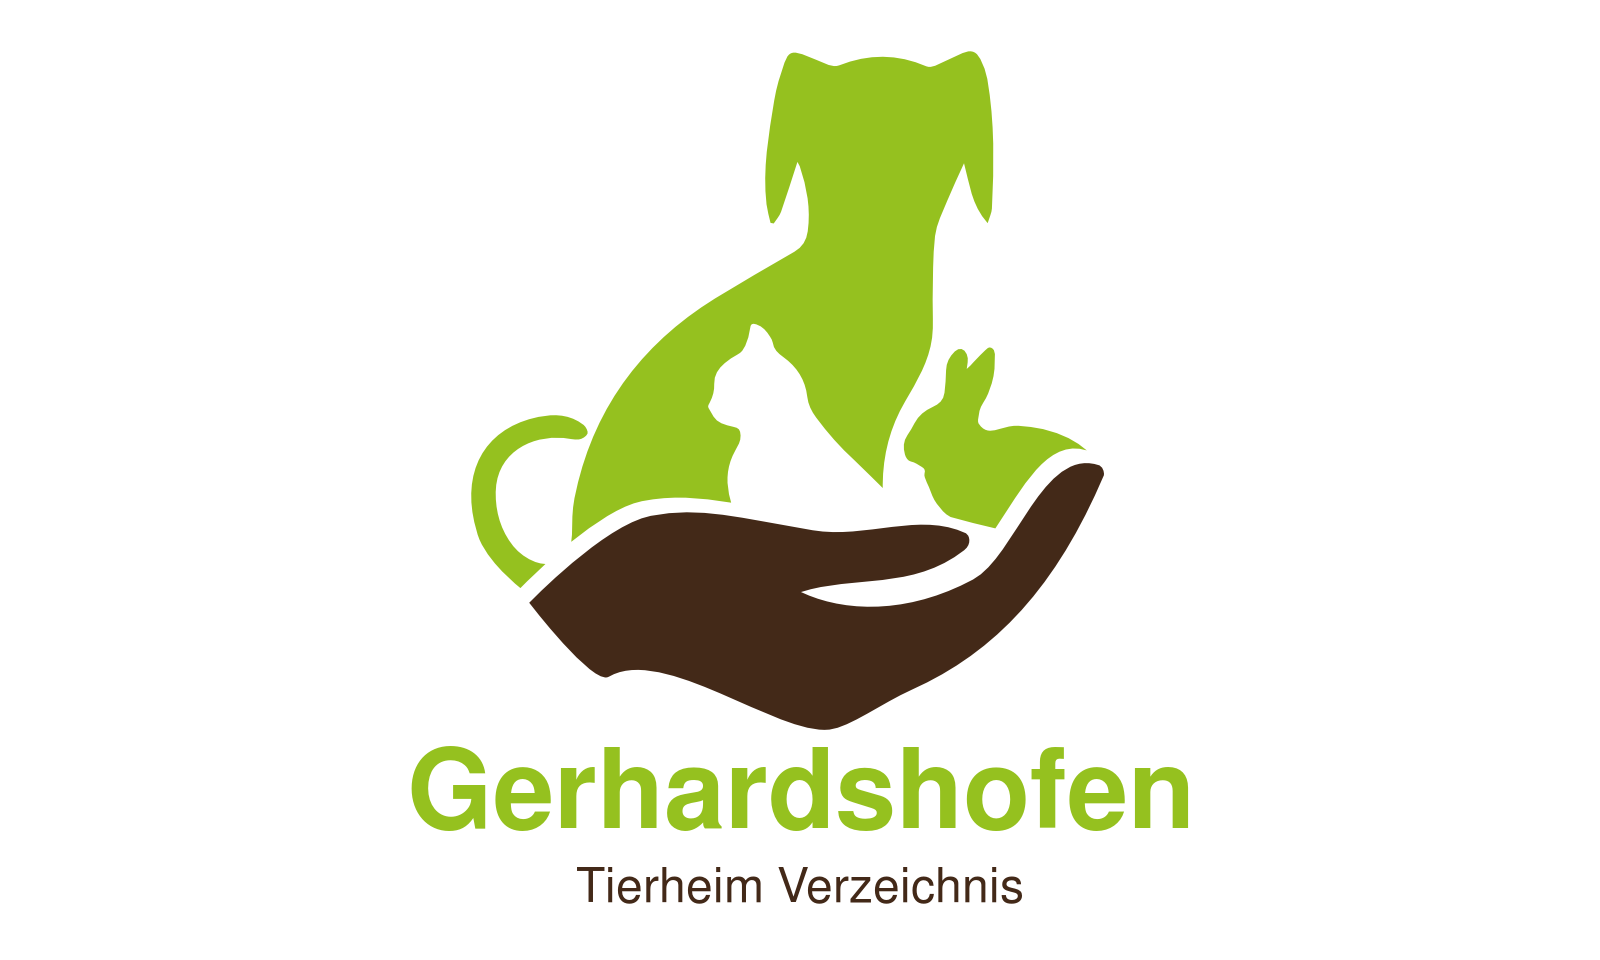 Tierheim Gerhardshofen